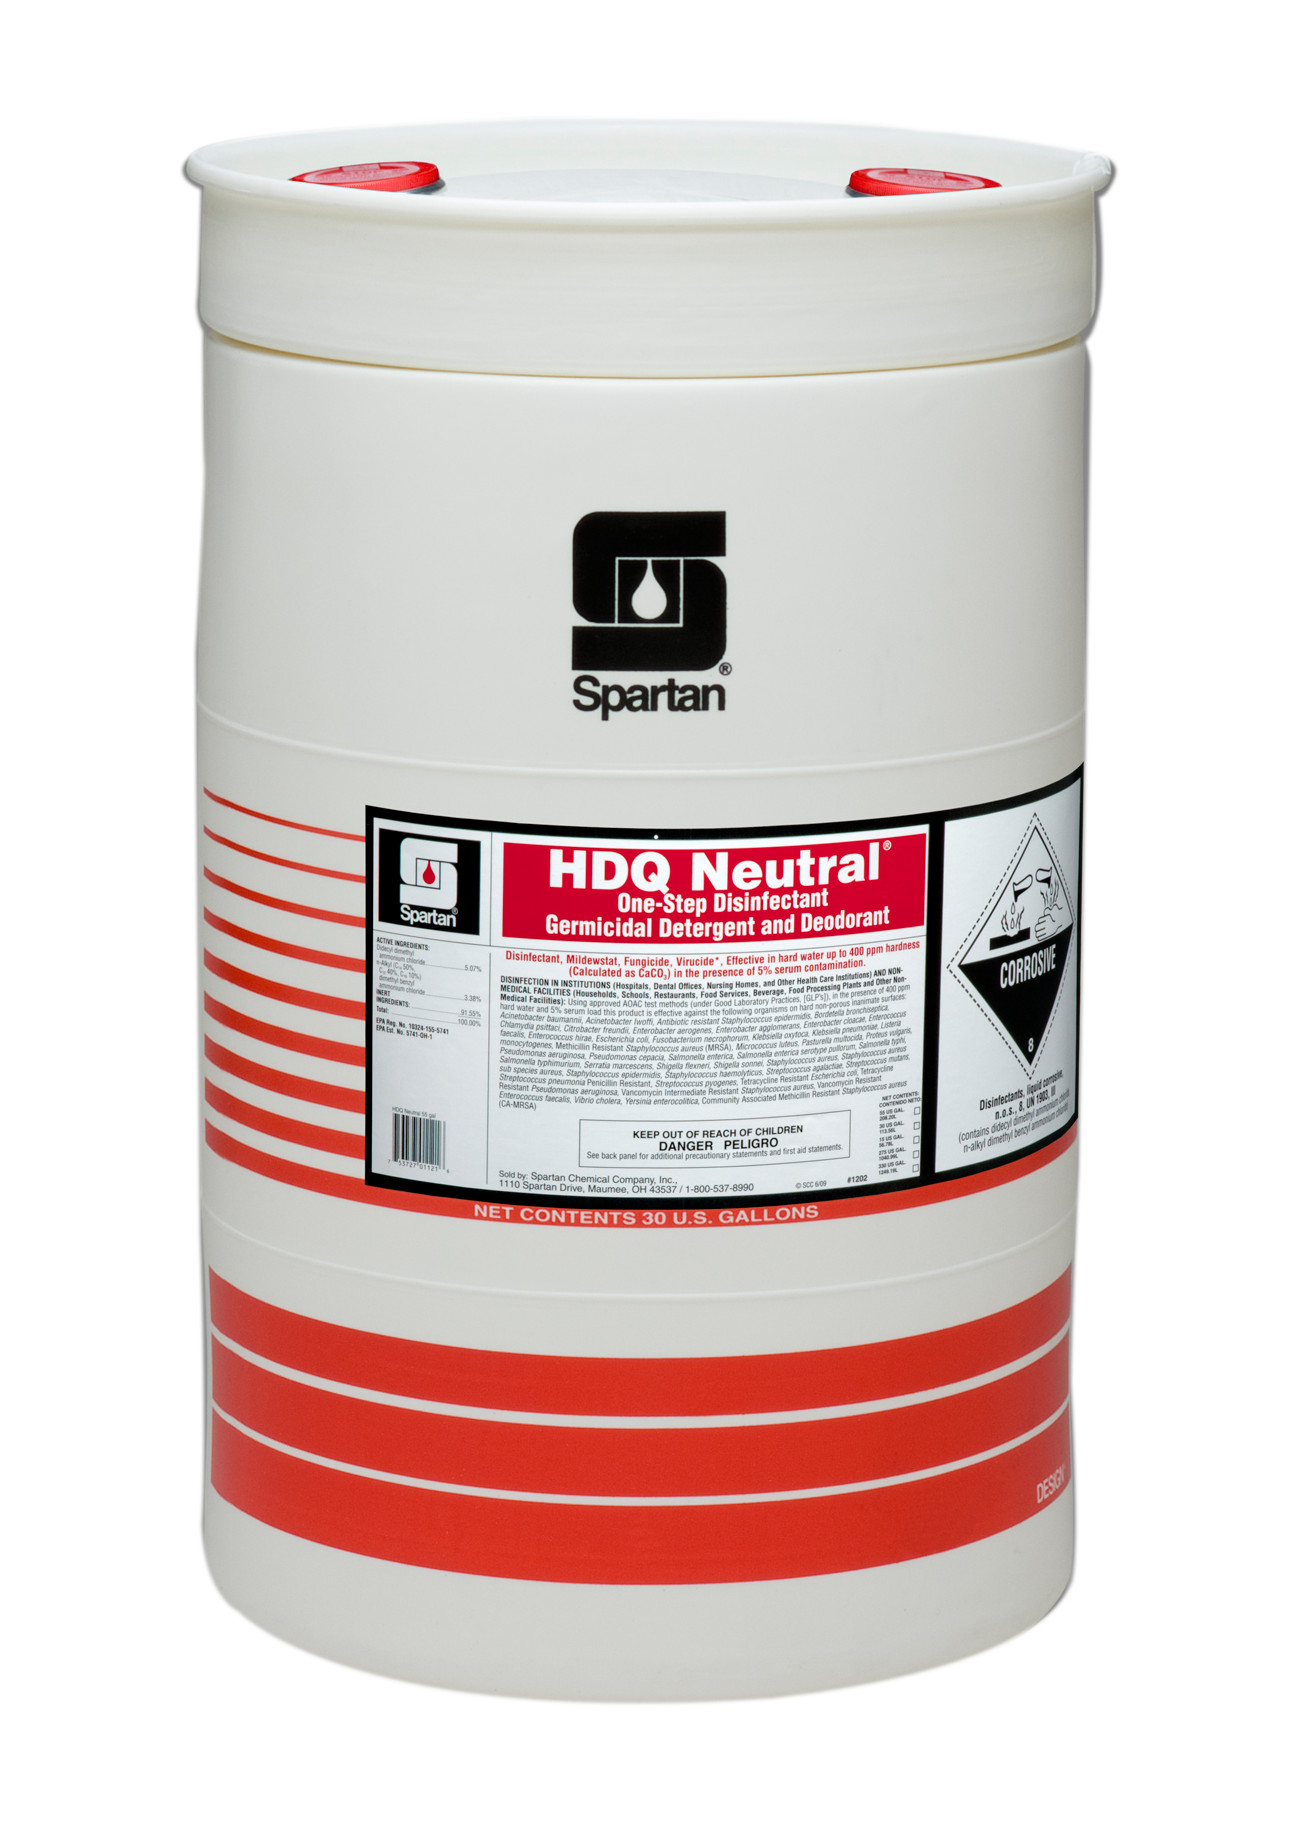 Spartan Chemical Company HDQ Neutral, 30 GAL DRUM